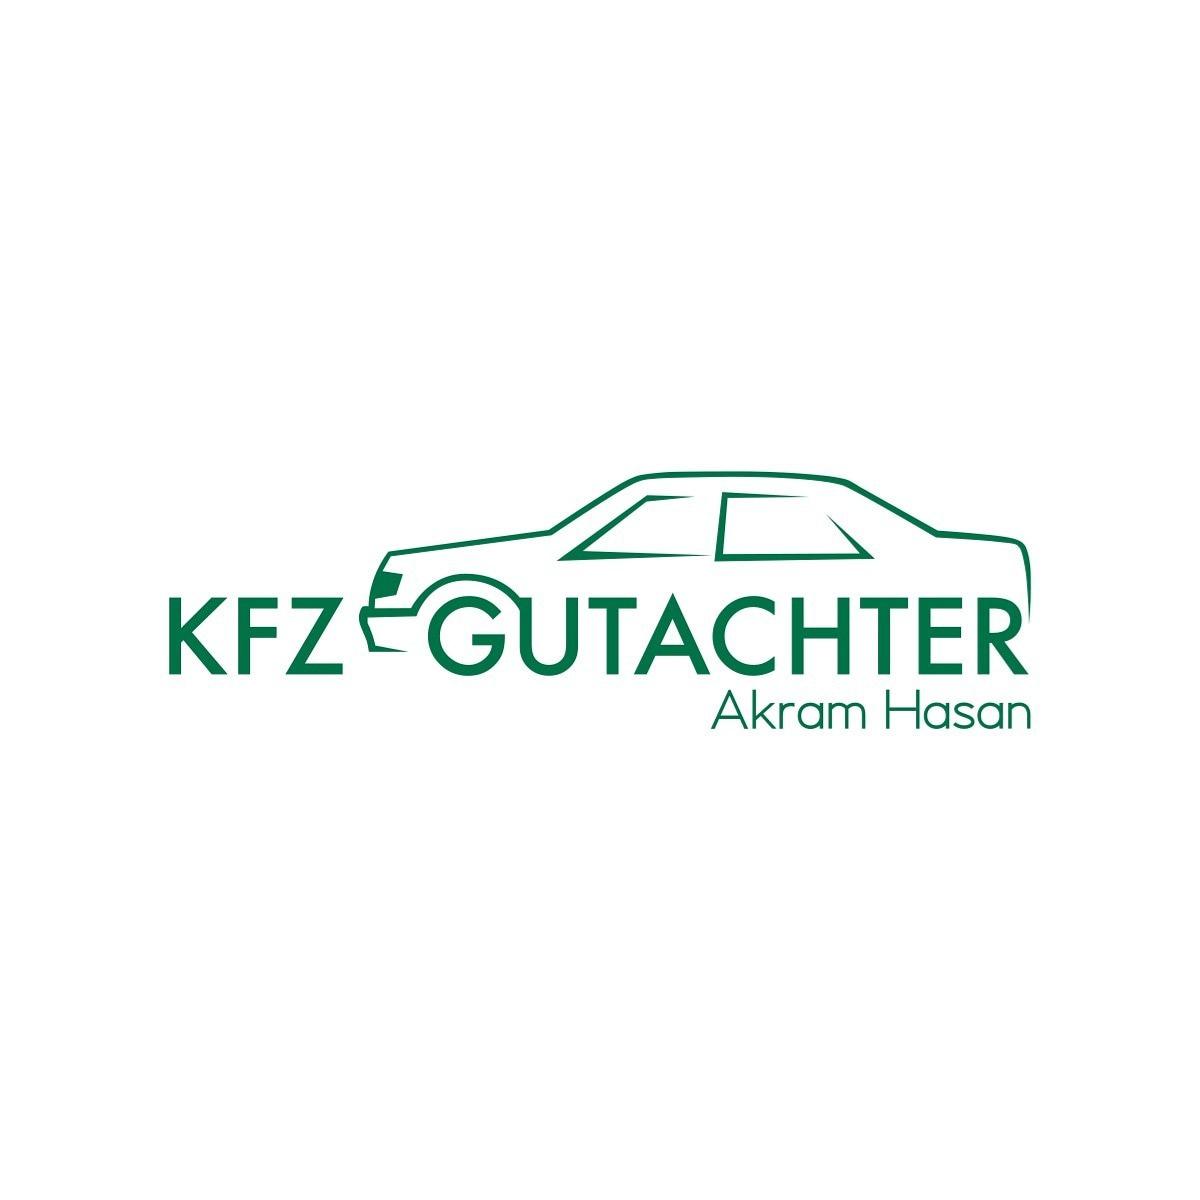 Kfz-Gutachter Akram Hasan